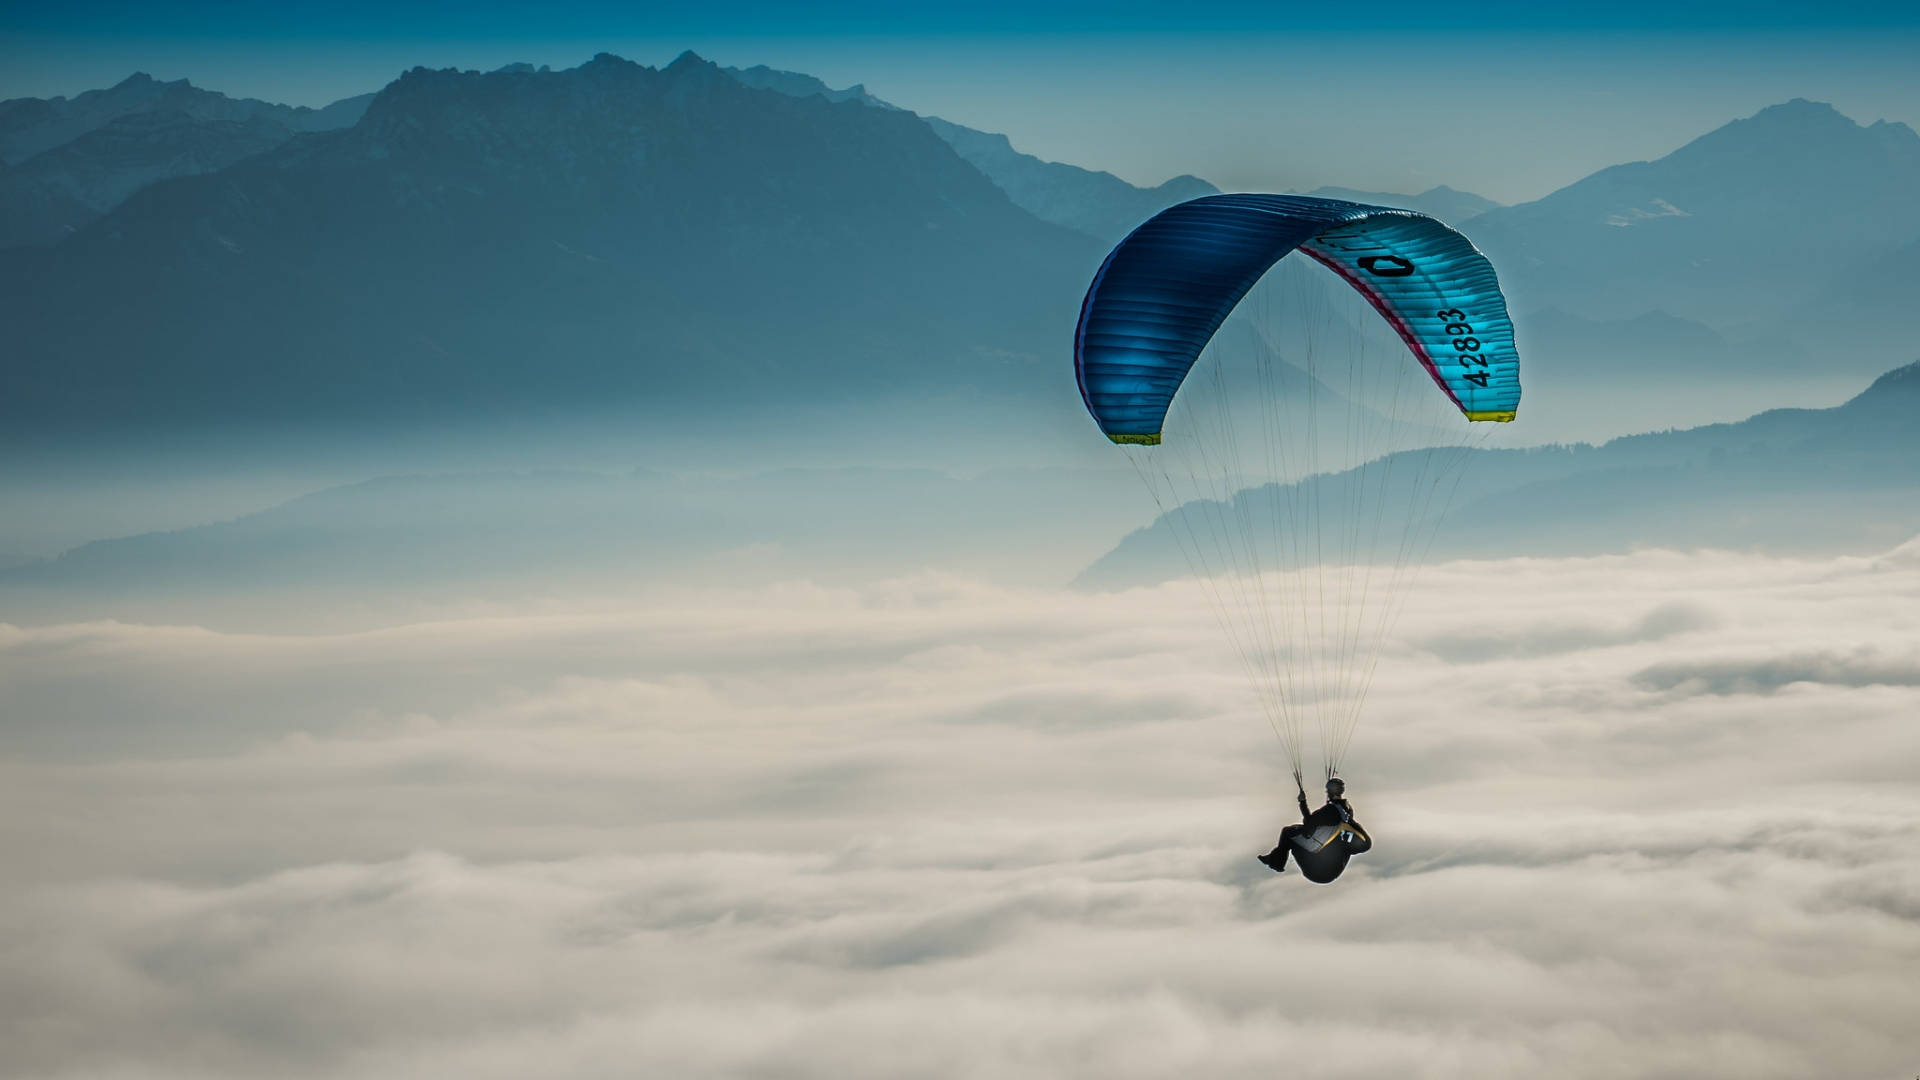 Paraglidingüber Dicken Wolken Wallpaper